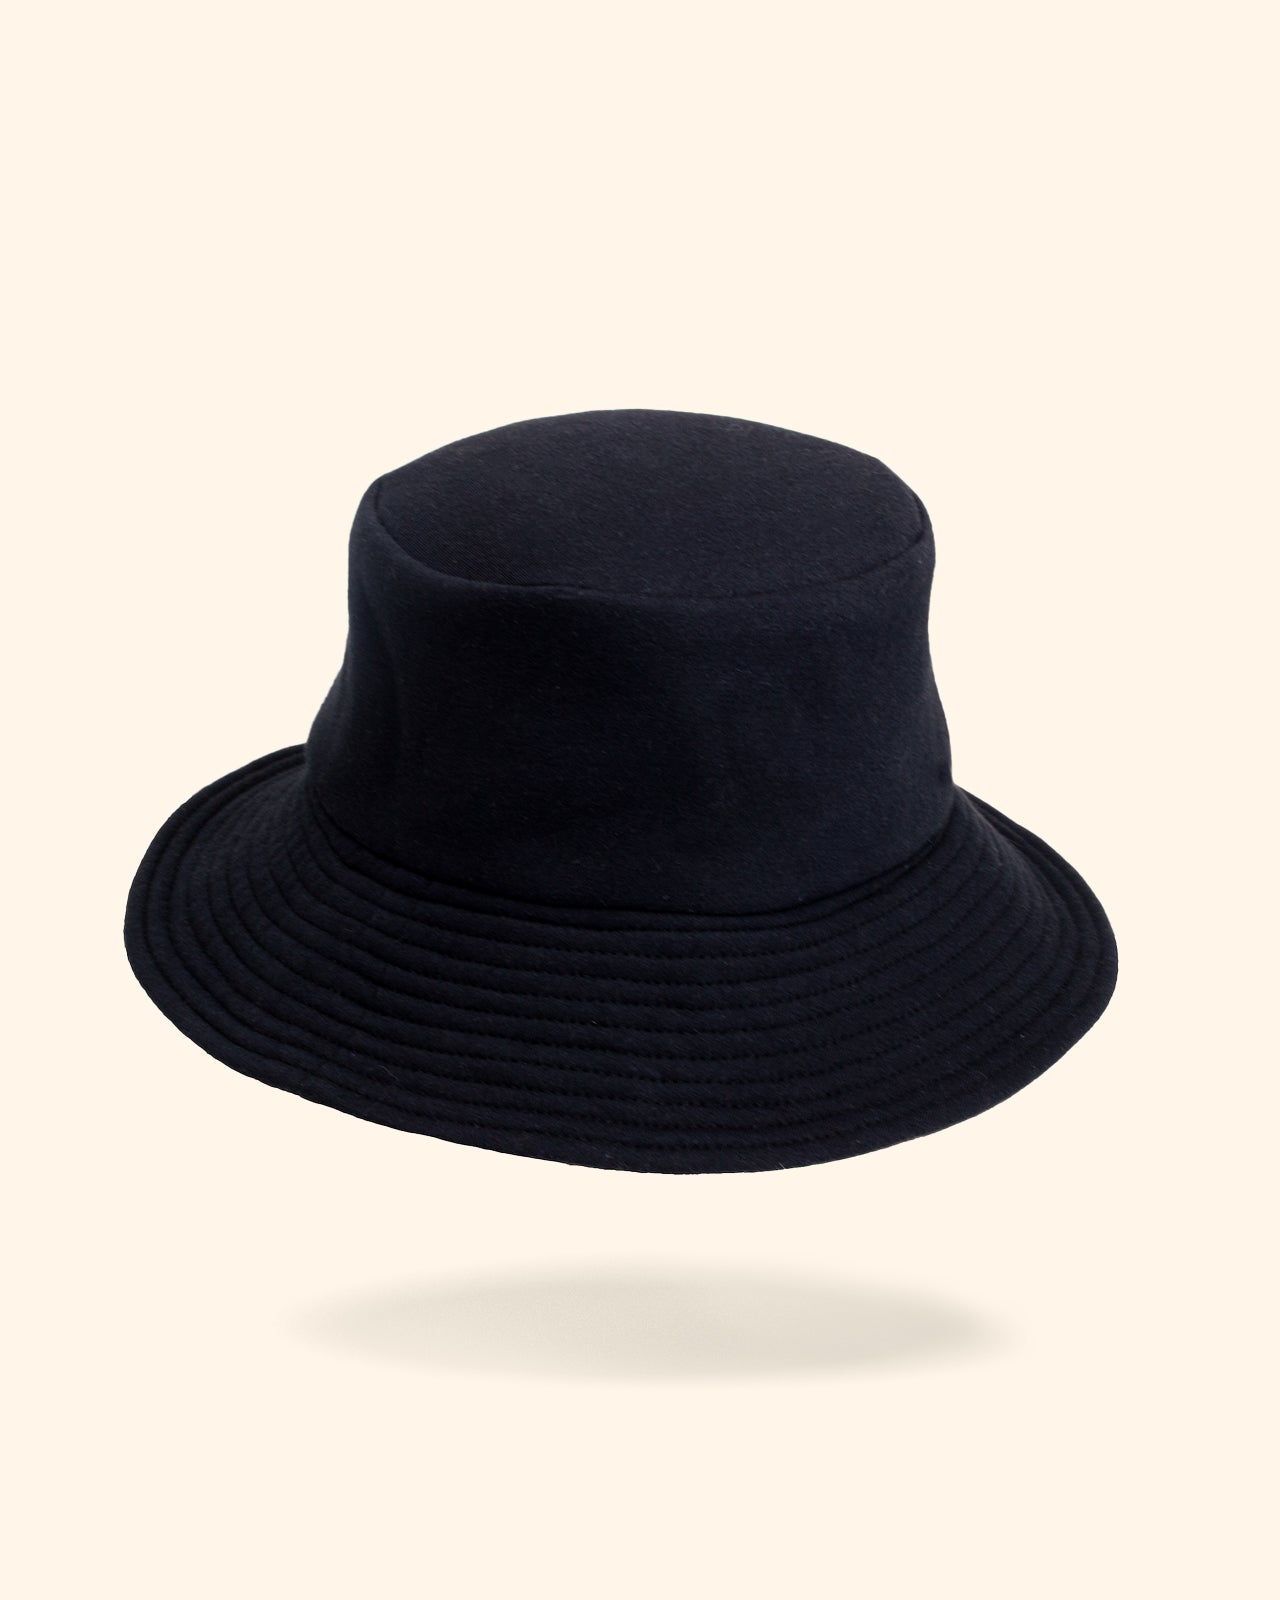 Silk hat